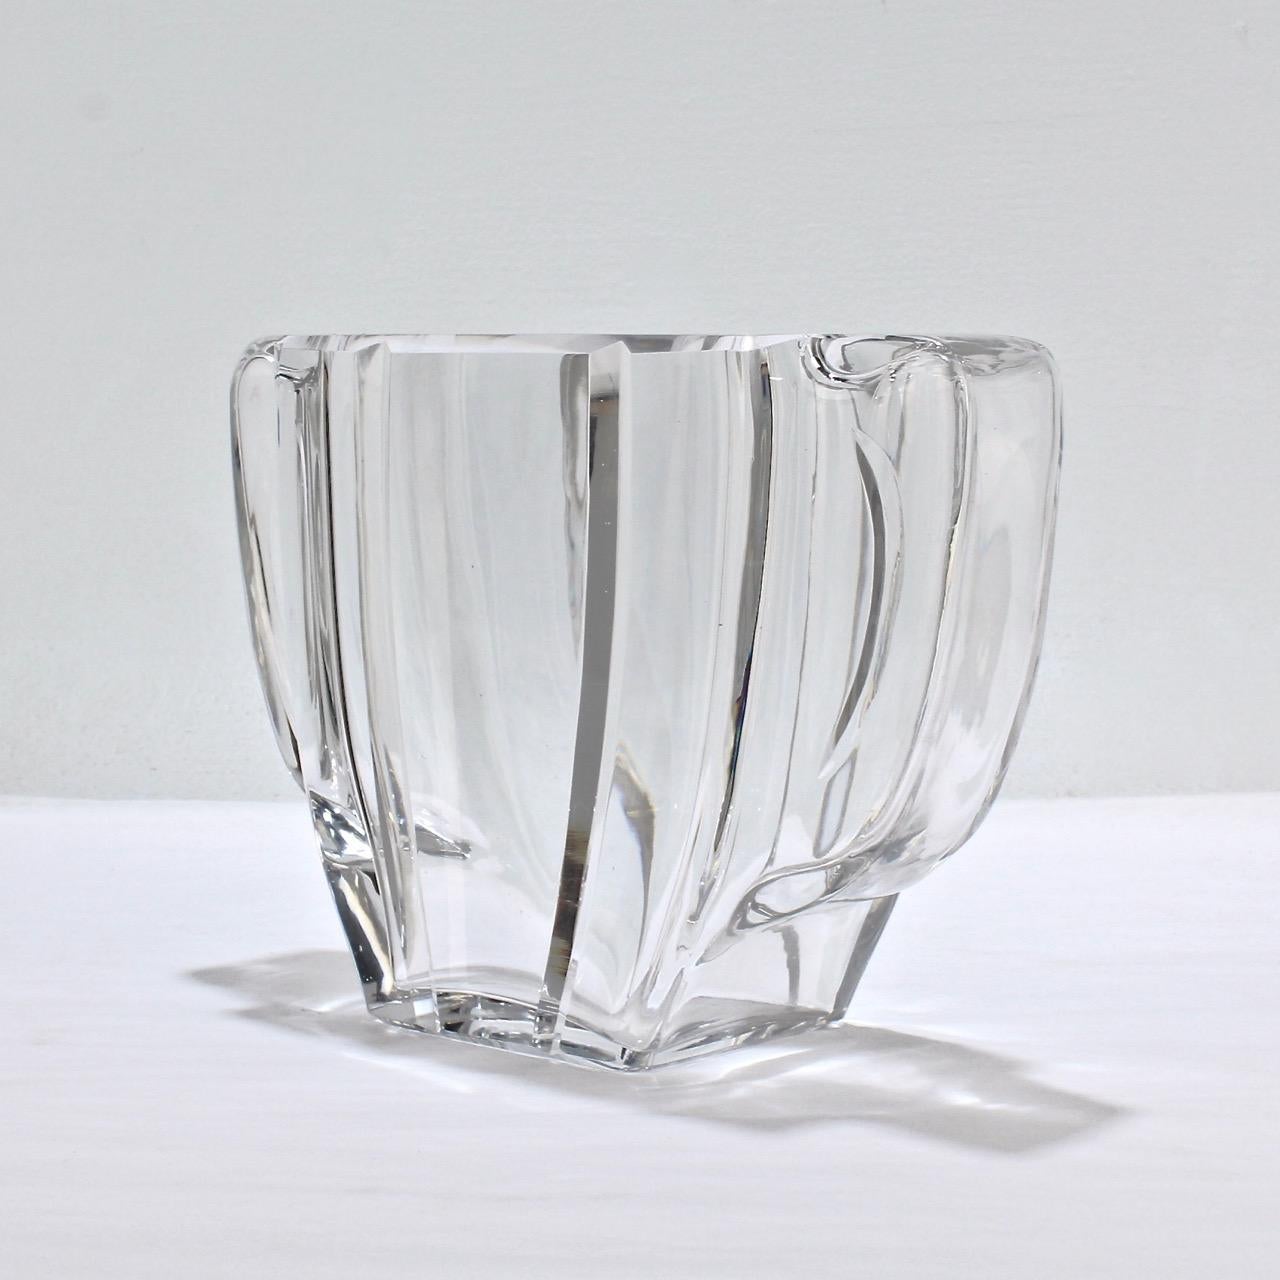 Eine schwer zu findende Baccarat Art Deco Vase mit zwei Henkeln.

Schlanke Form mit hohlen integrierten Griffen an jeder Seite. 

Der Sockel trägt die geätzte Baccarat Fabrikmarke.

Maße: Höhe: ca. 5 3/4 Zoll
Breite: ca. 8 1/8 Zoll.



 